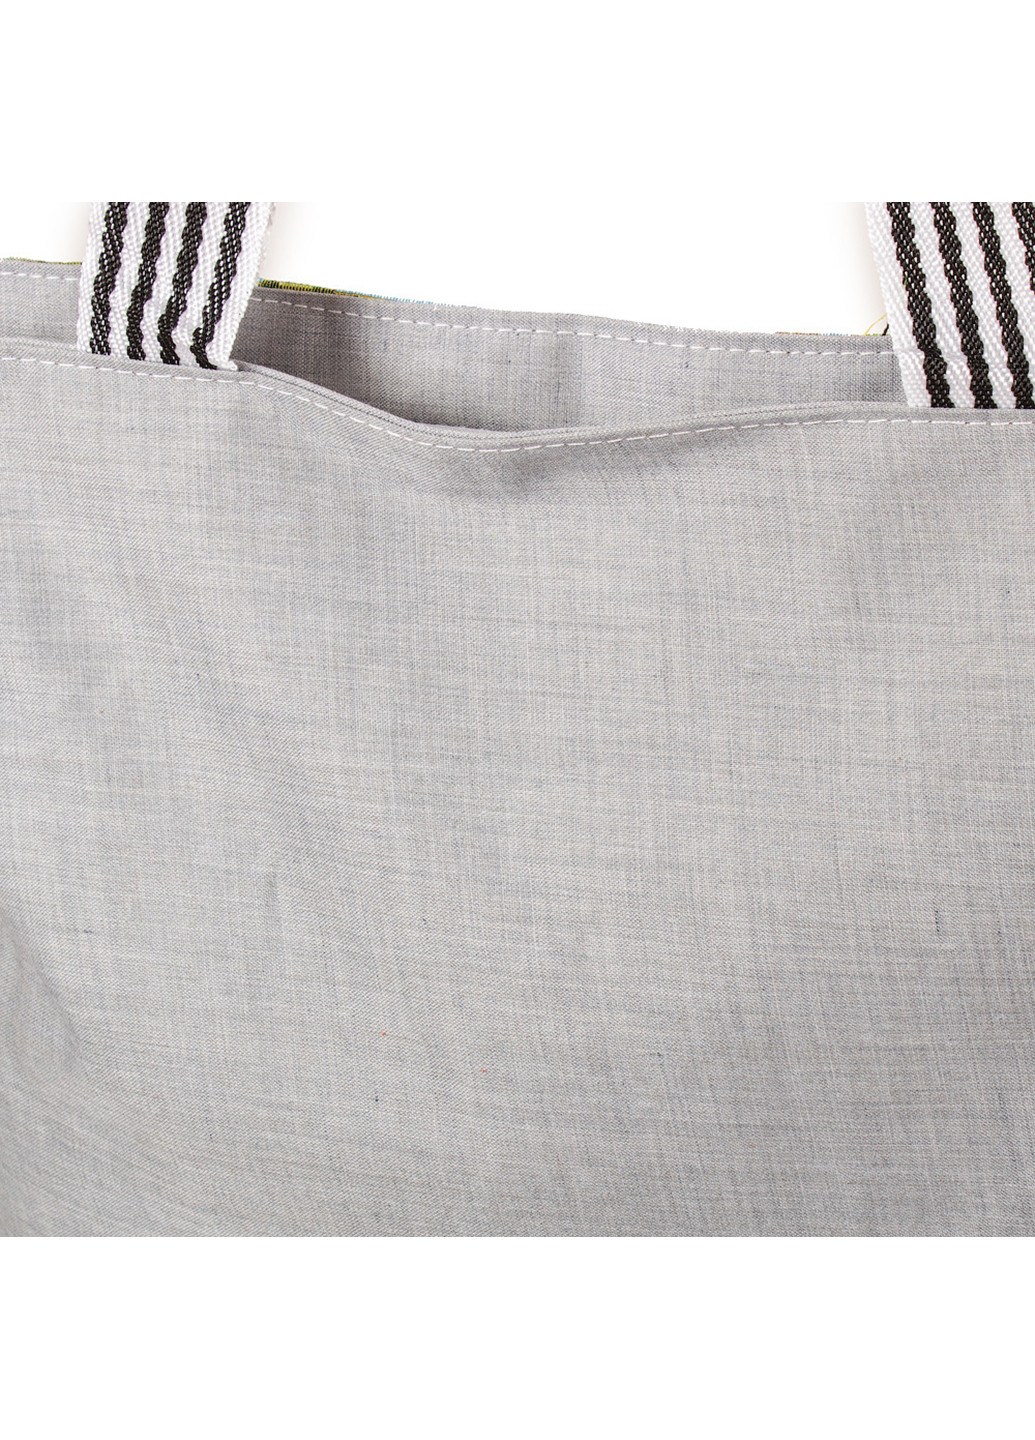 Жіноча пляжна тканинна сумка 37х37,5х10 см Valiria Fashion (252126849)